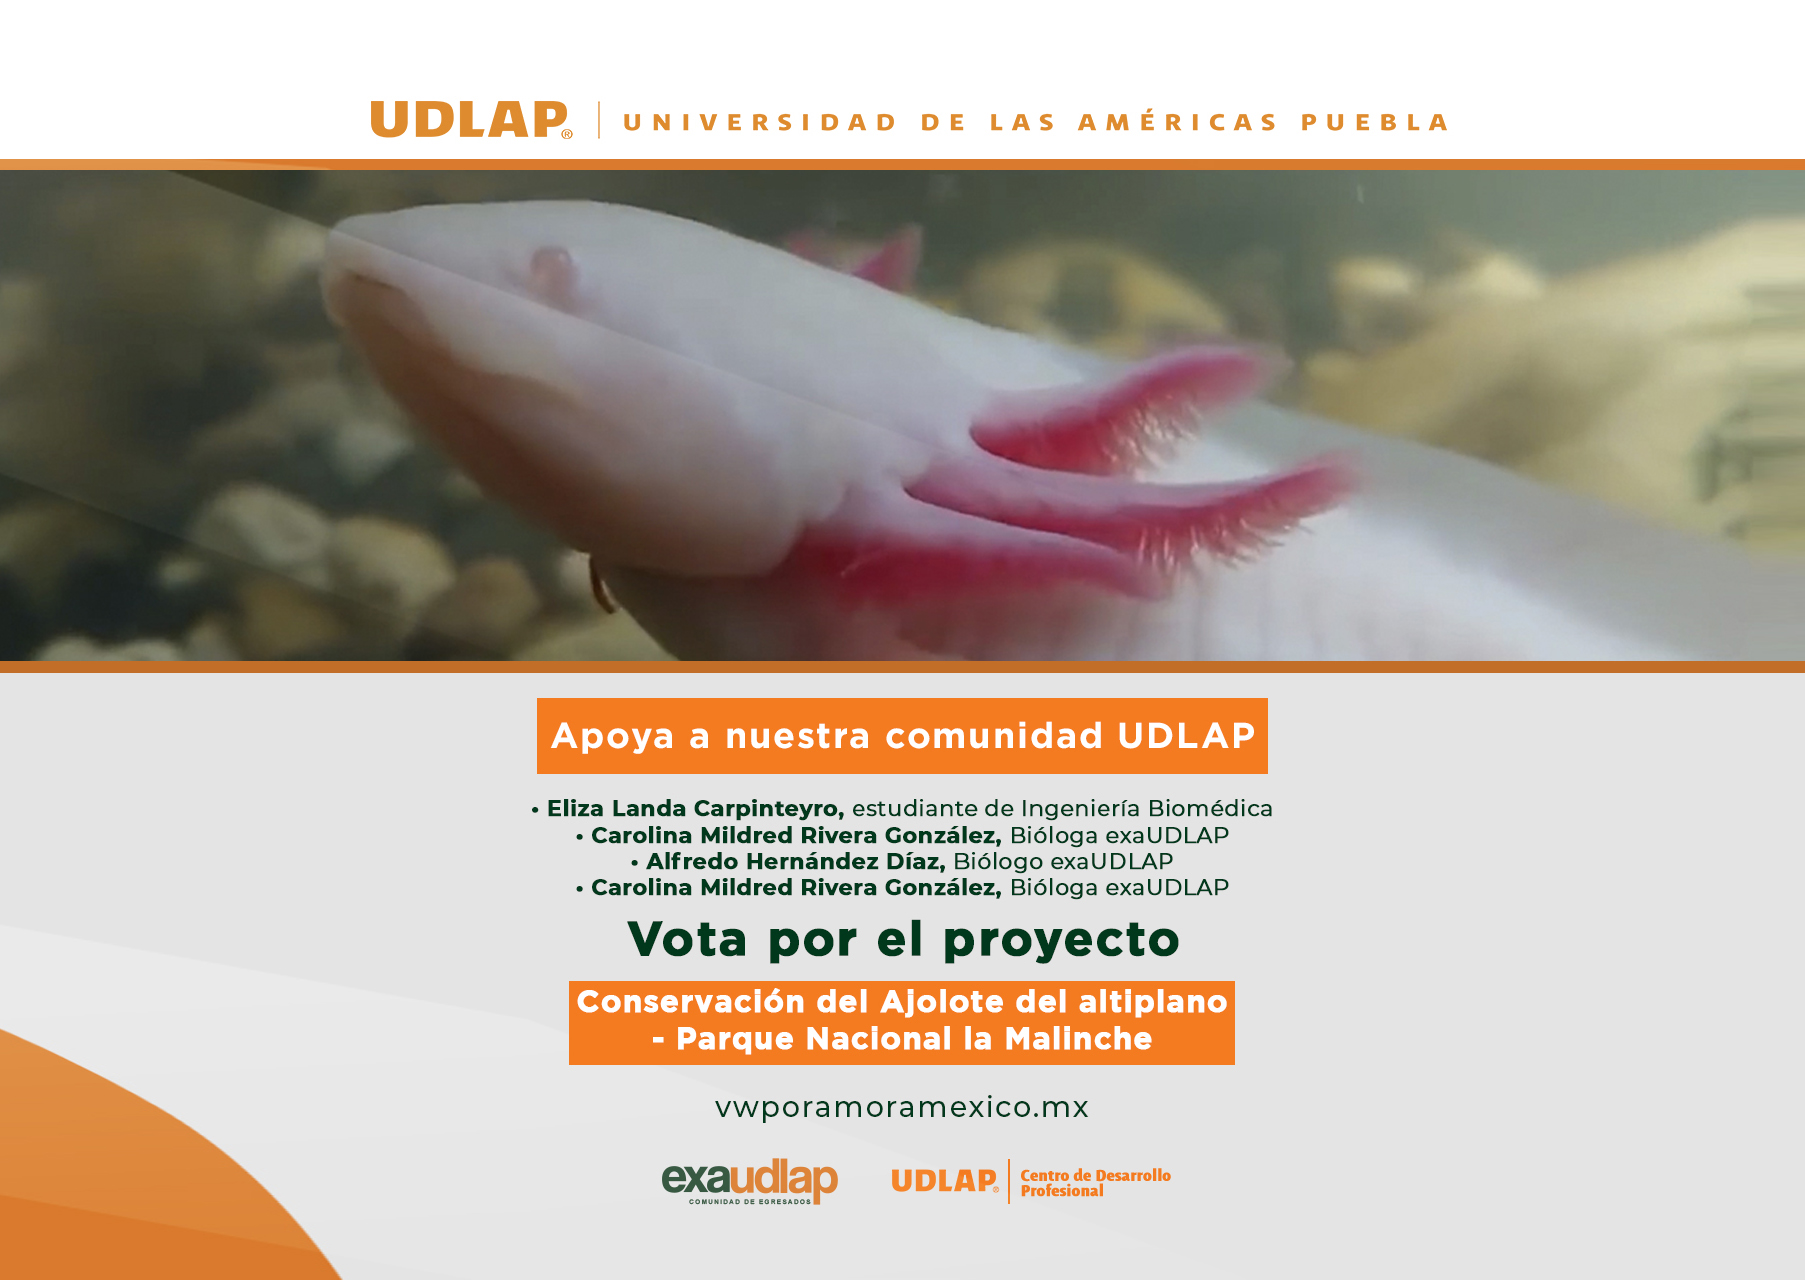 Egresada UDLAP invita a apoyar el proyecto por la conservación del ajolote del altiplano